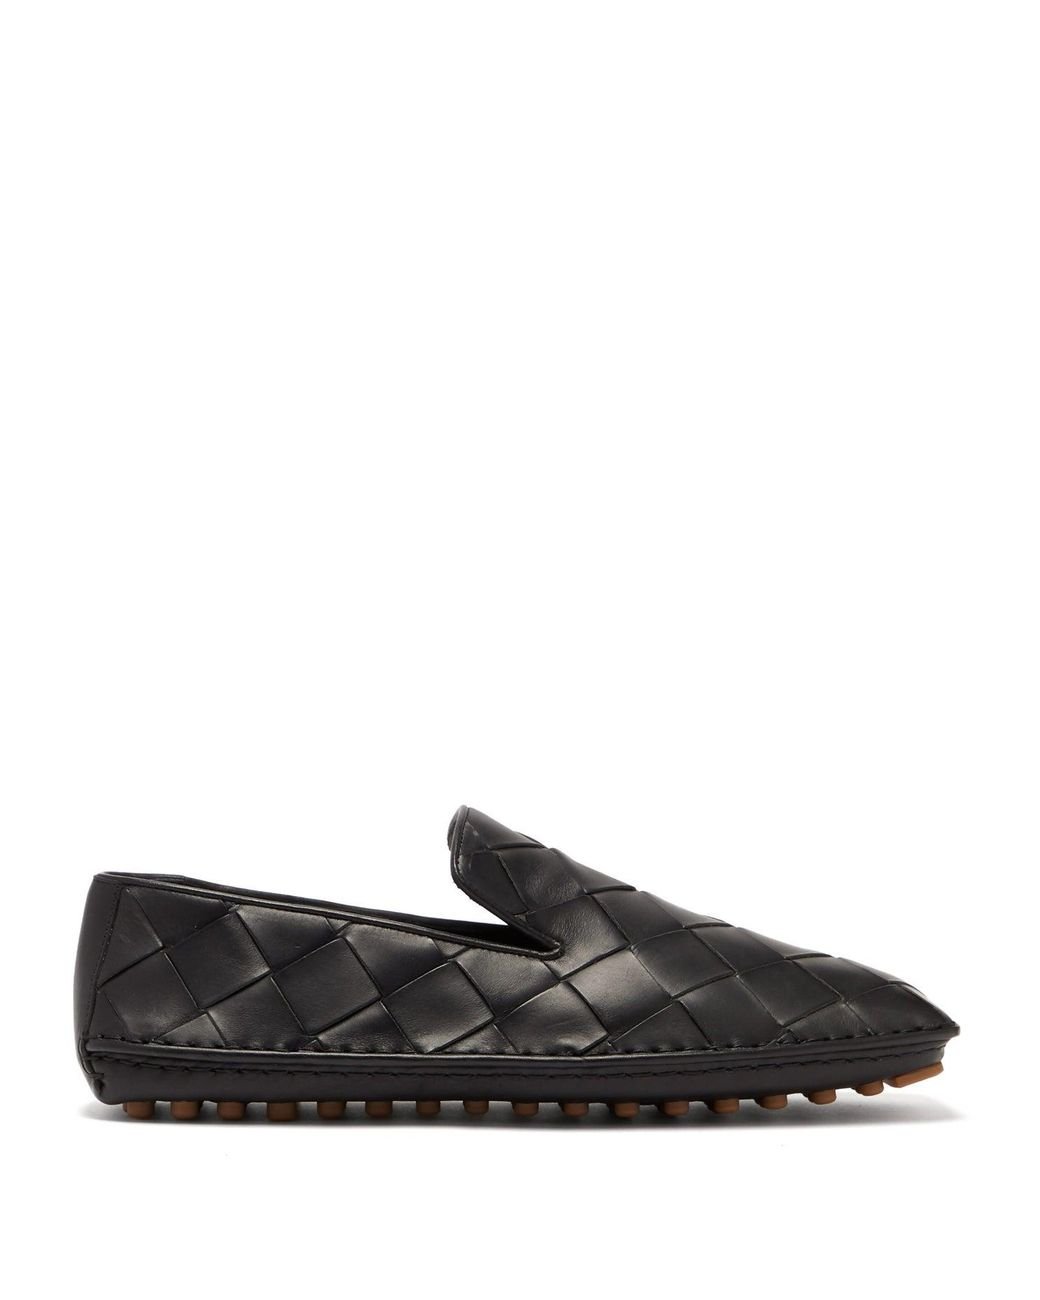 Bottega Veneta Intrecciato Leather Loafers in Black for Men - Lyst